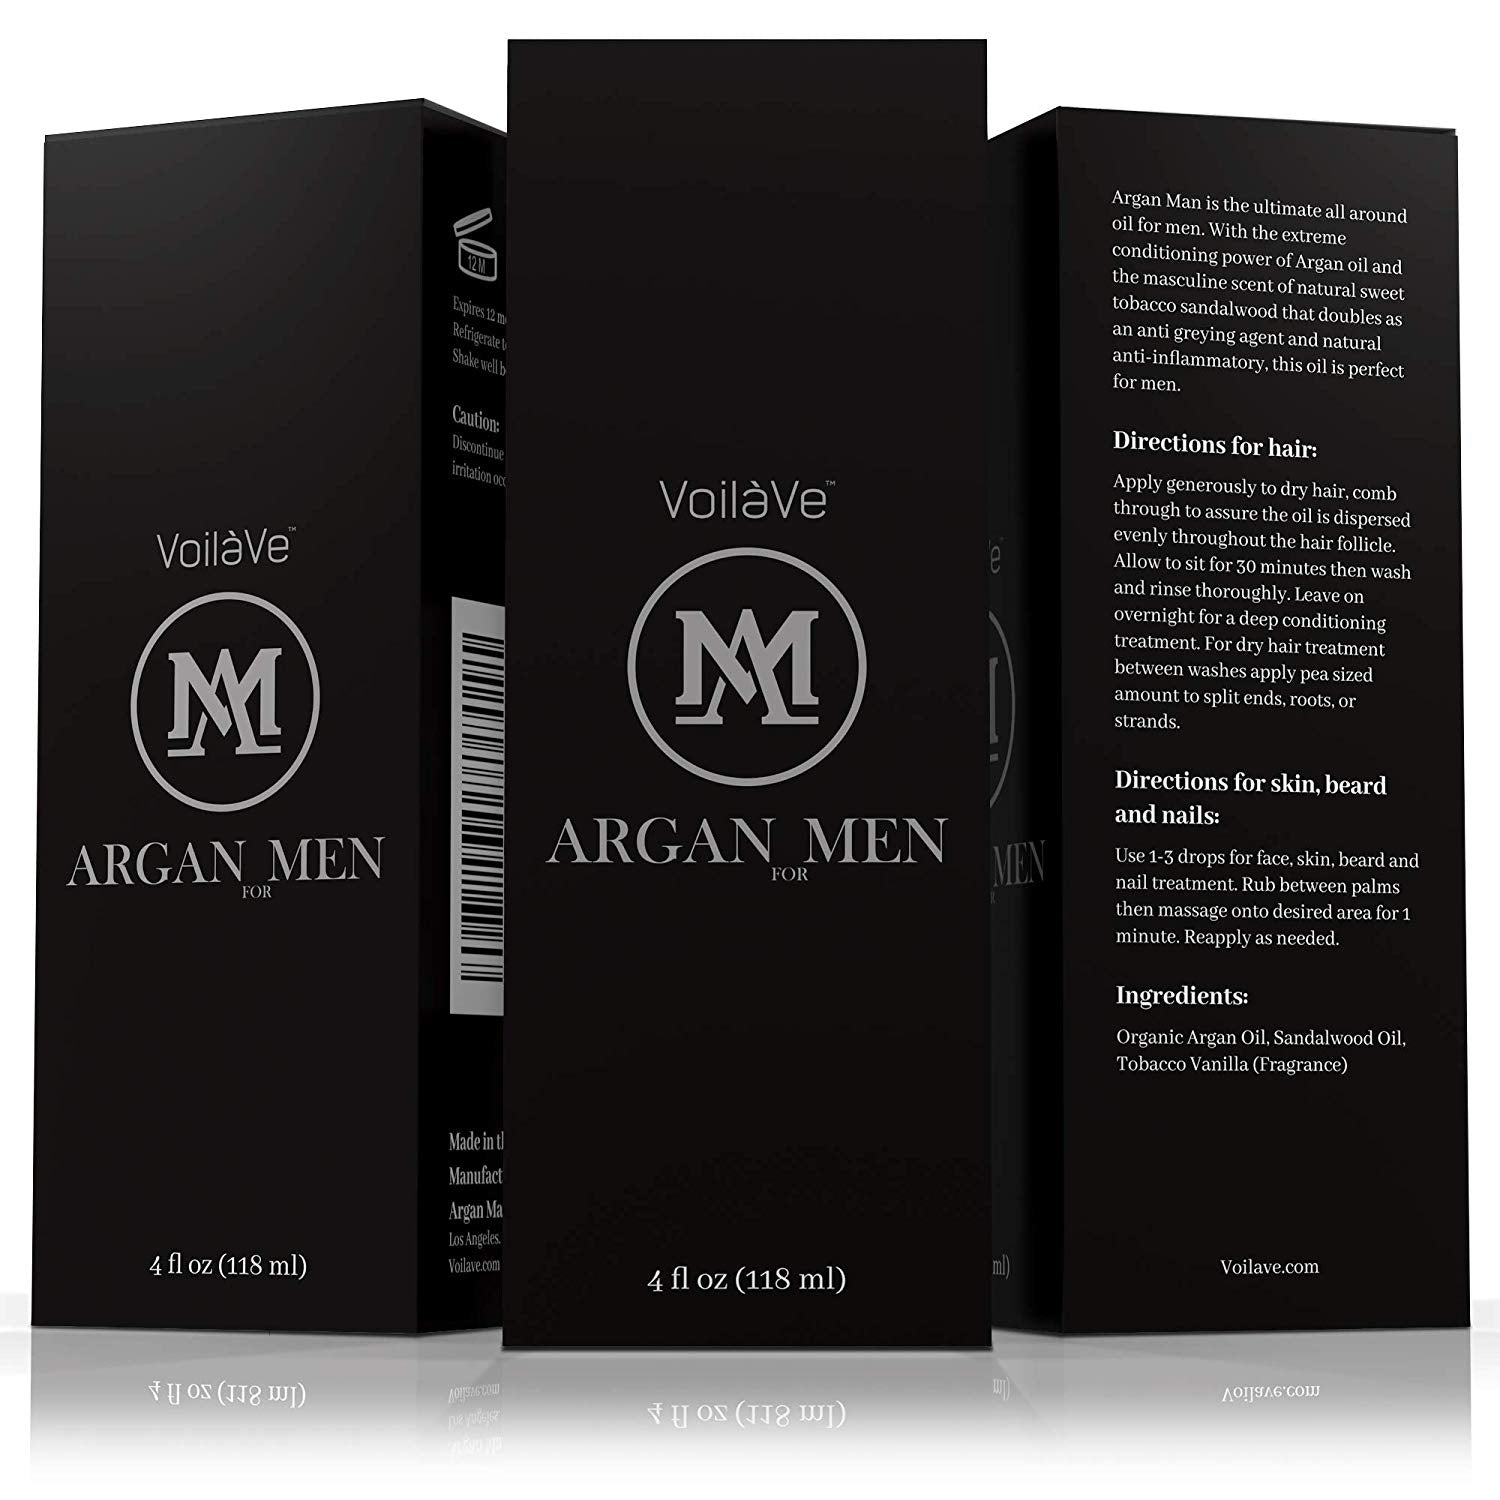 VoilaVe Argan Man Skin, Hair, Beard, and Body Oil for Men